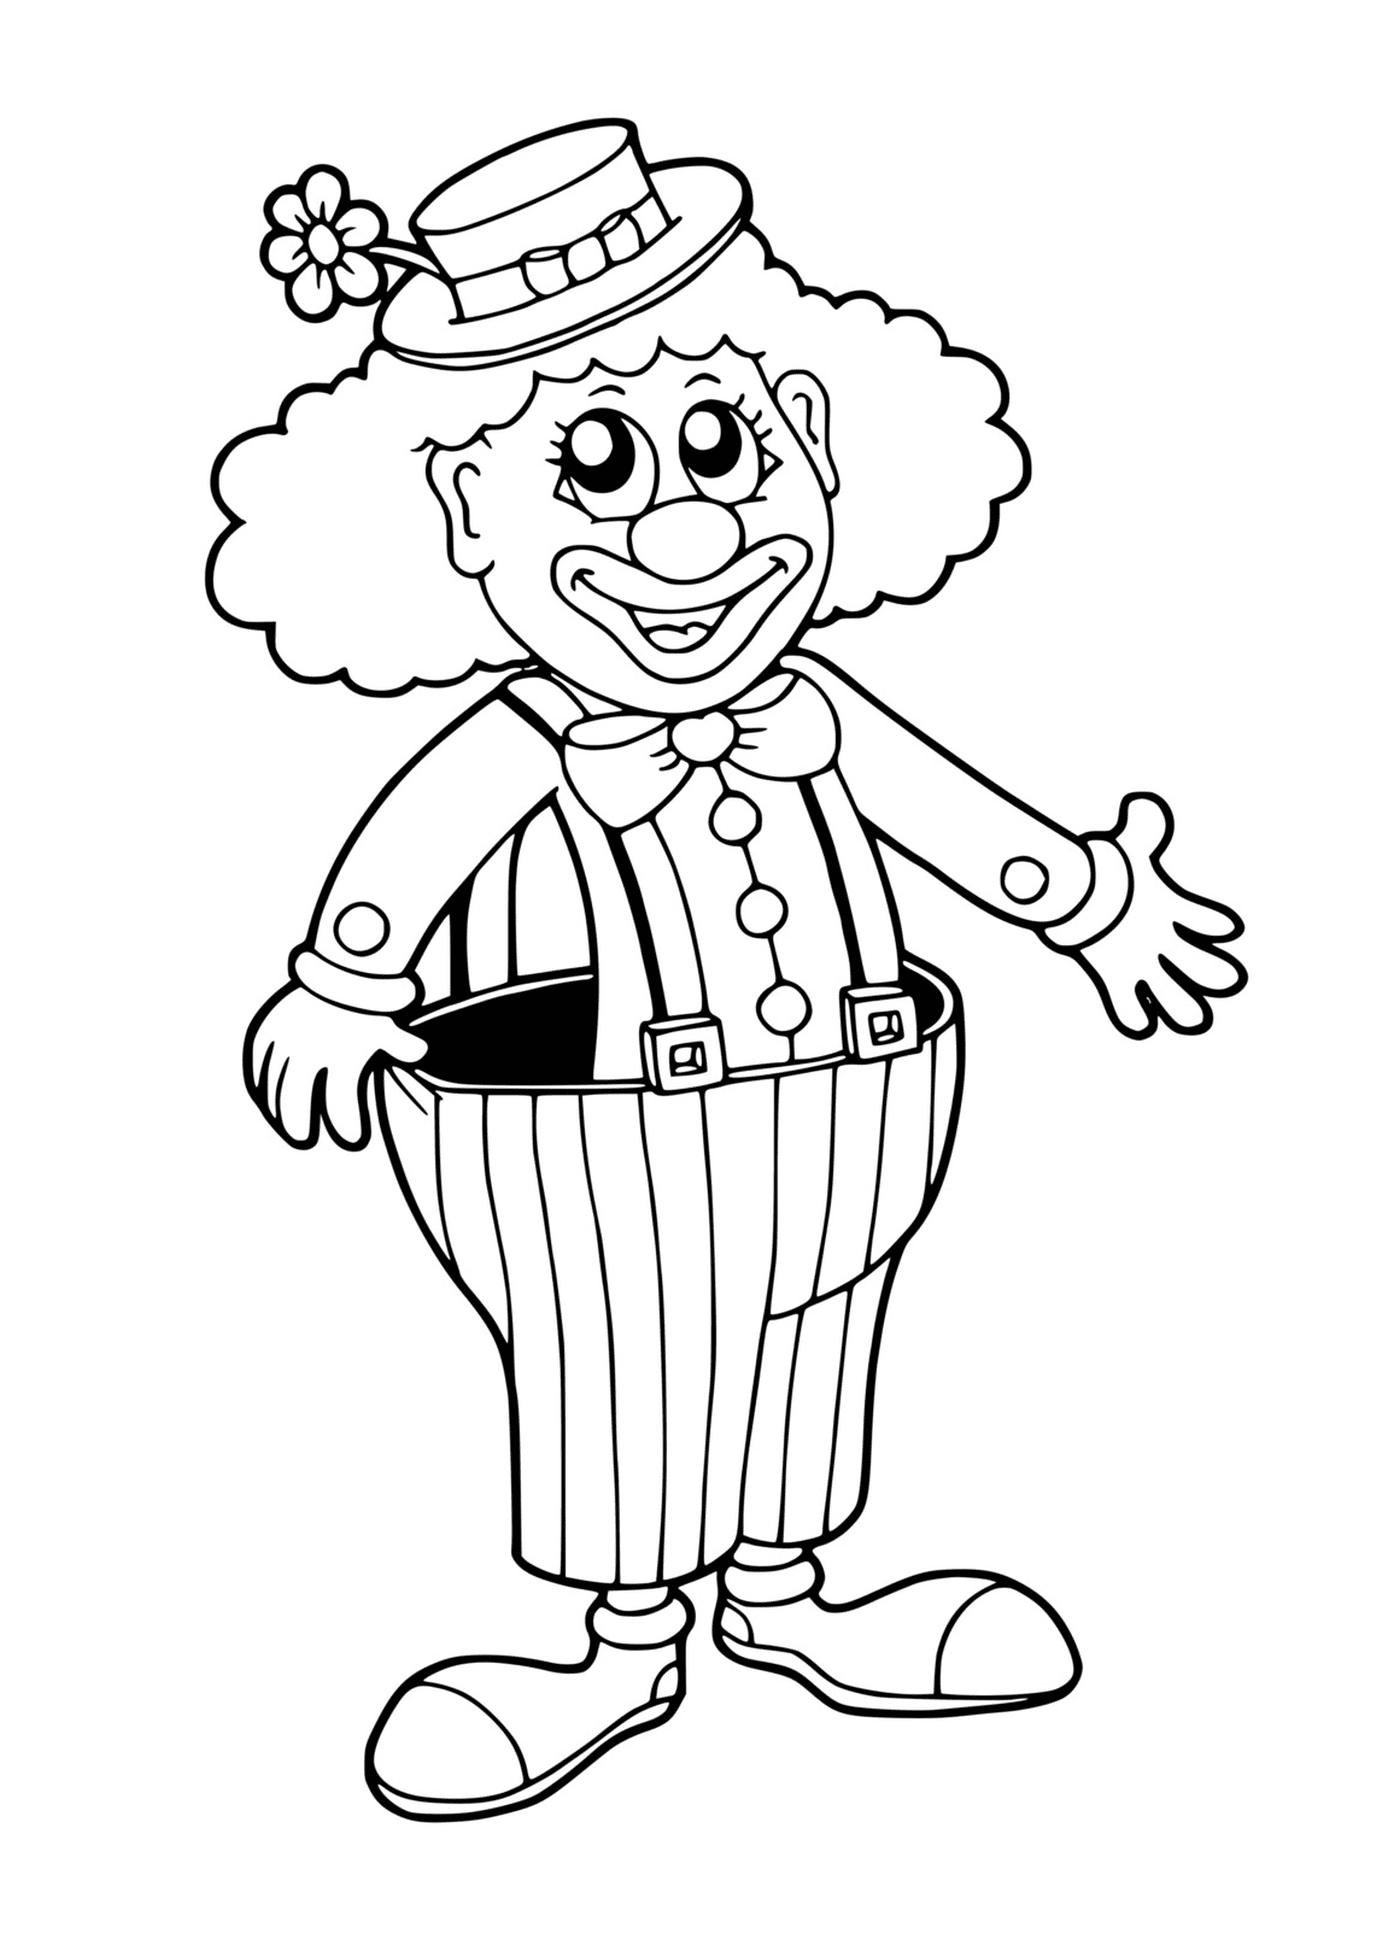  Fun and funny circus clown 